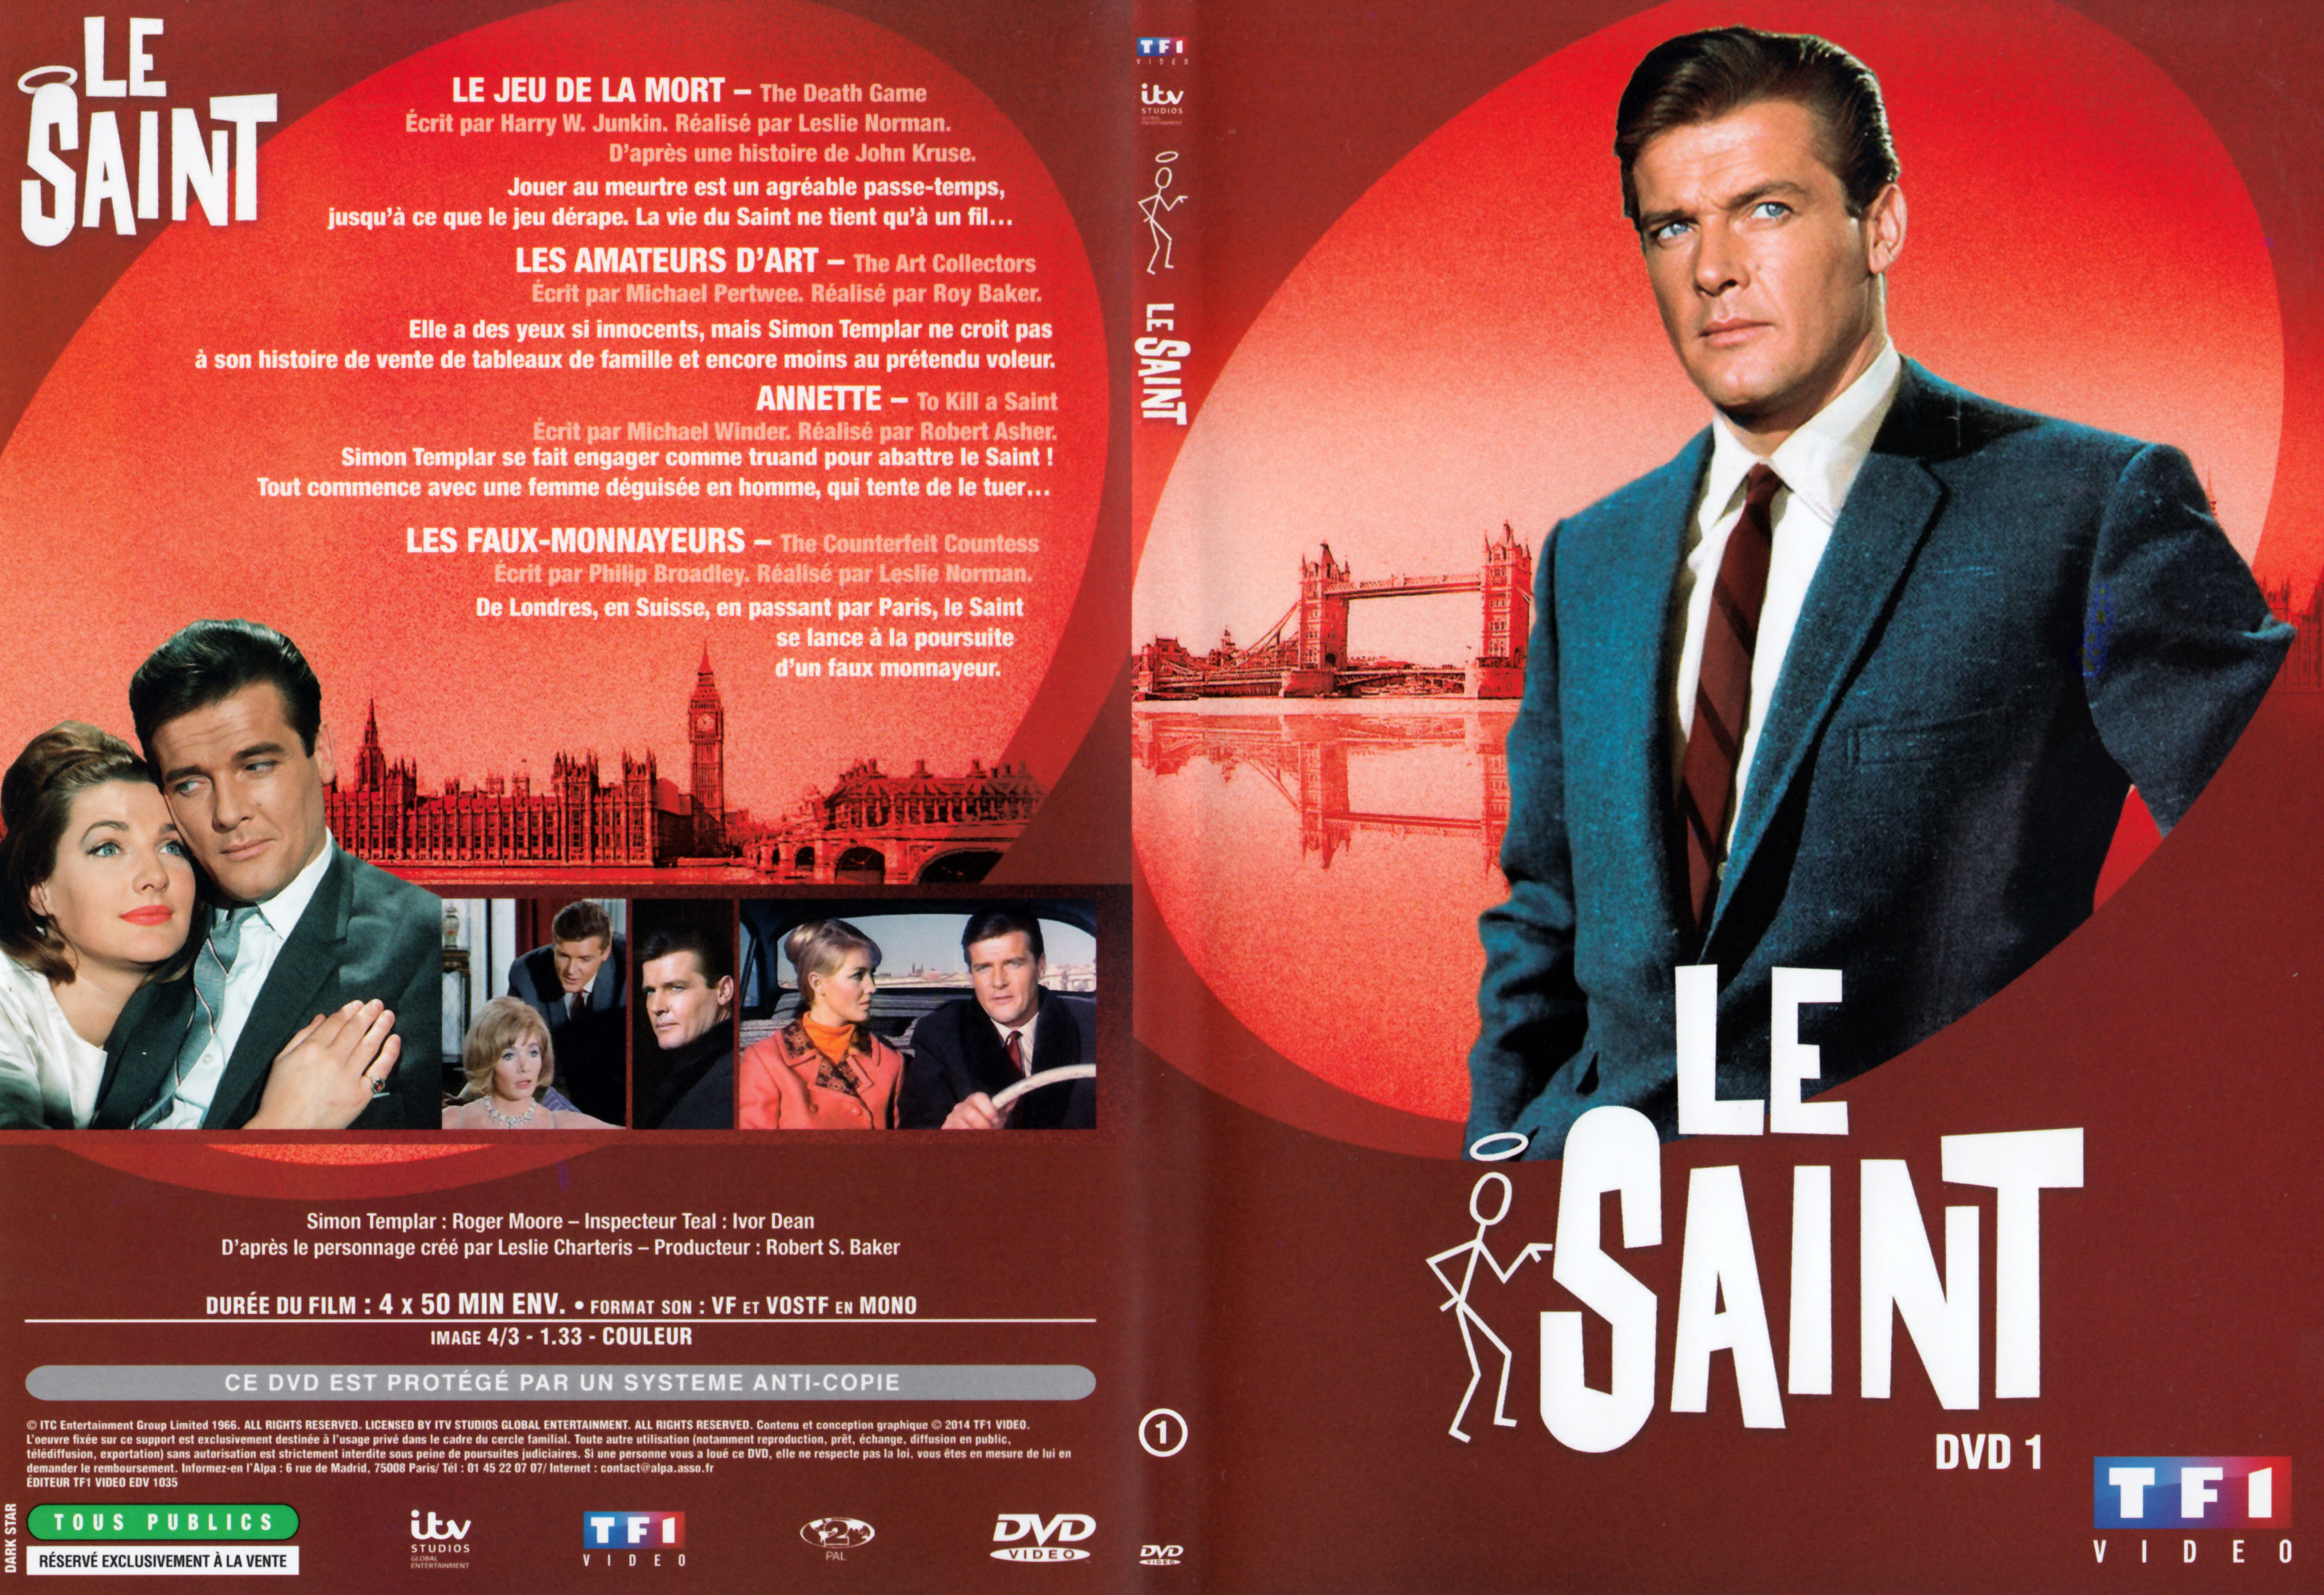 Jaquette DVD Le saint Saison 5 DVD 1